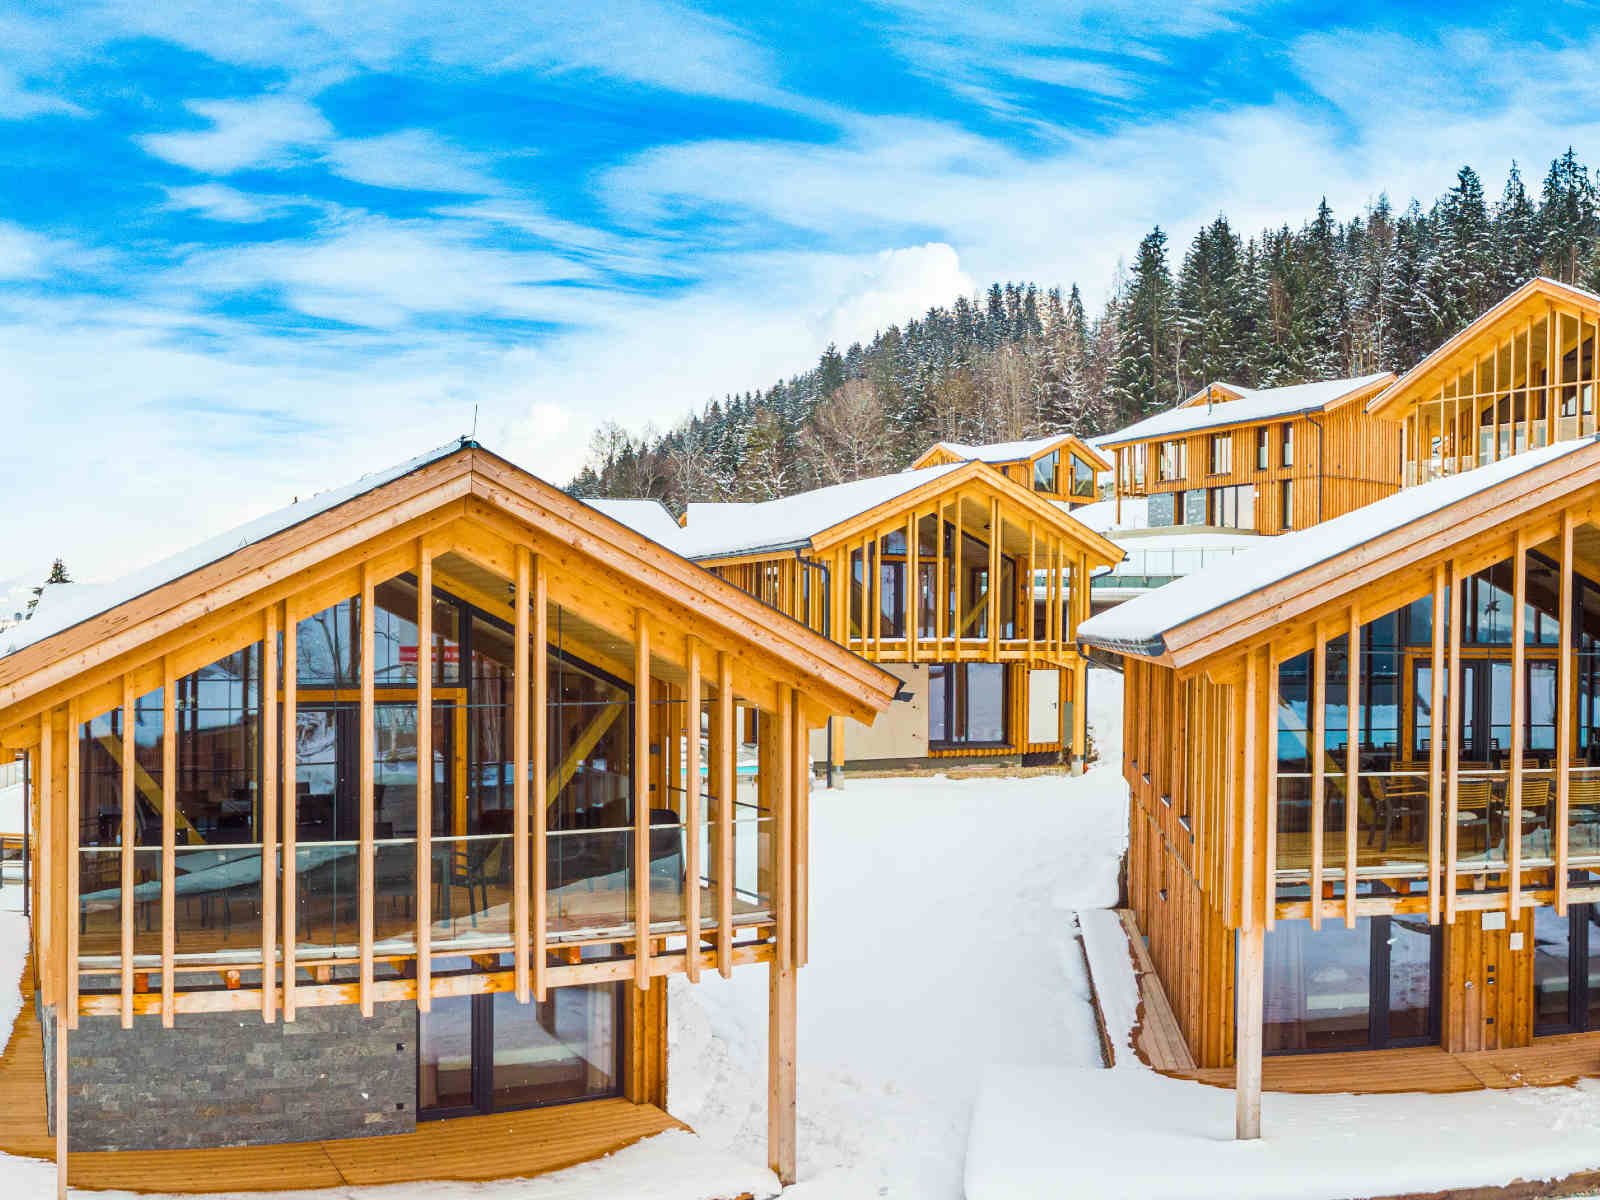 Chalets mit Private-Spa boomen: »Alps Residence« eröffnete jüngst dieses Resort auf der Reiteralm in Schladming.